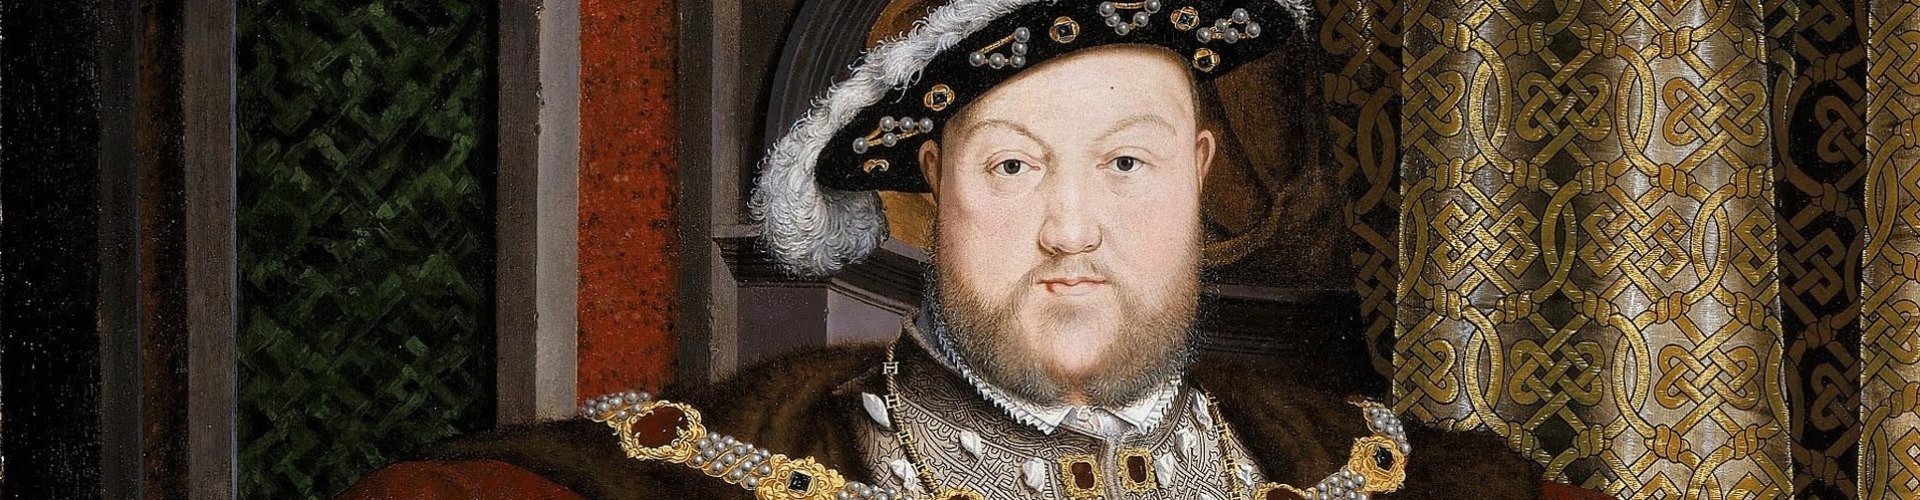 Válásért vallás, avagy feleségek VIII. Henrik udvarában